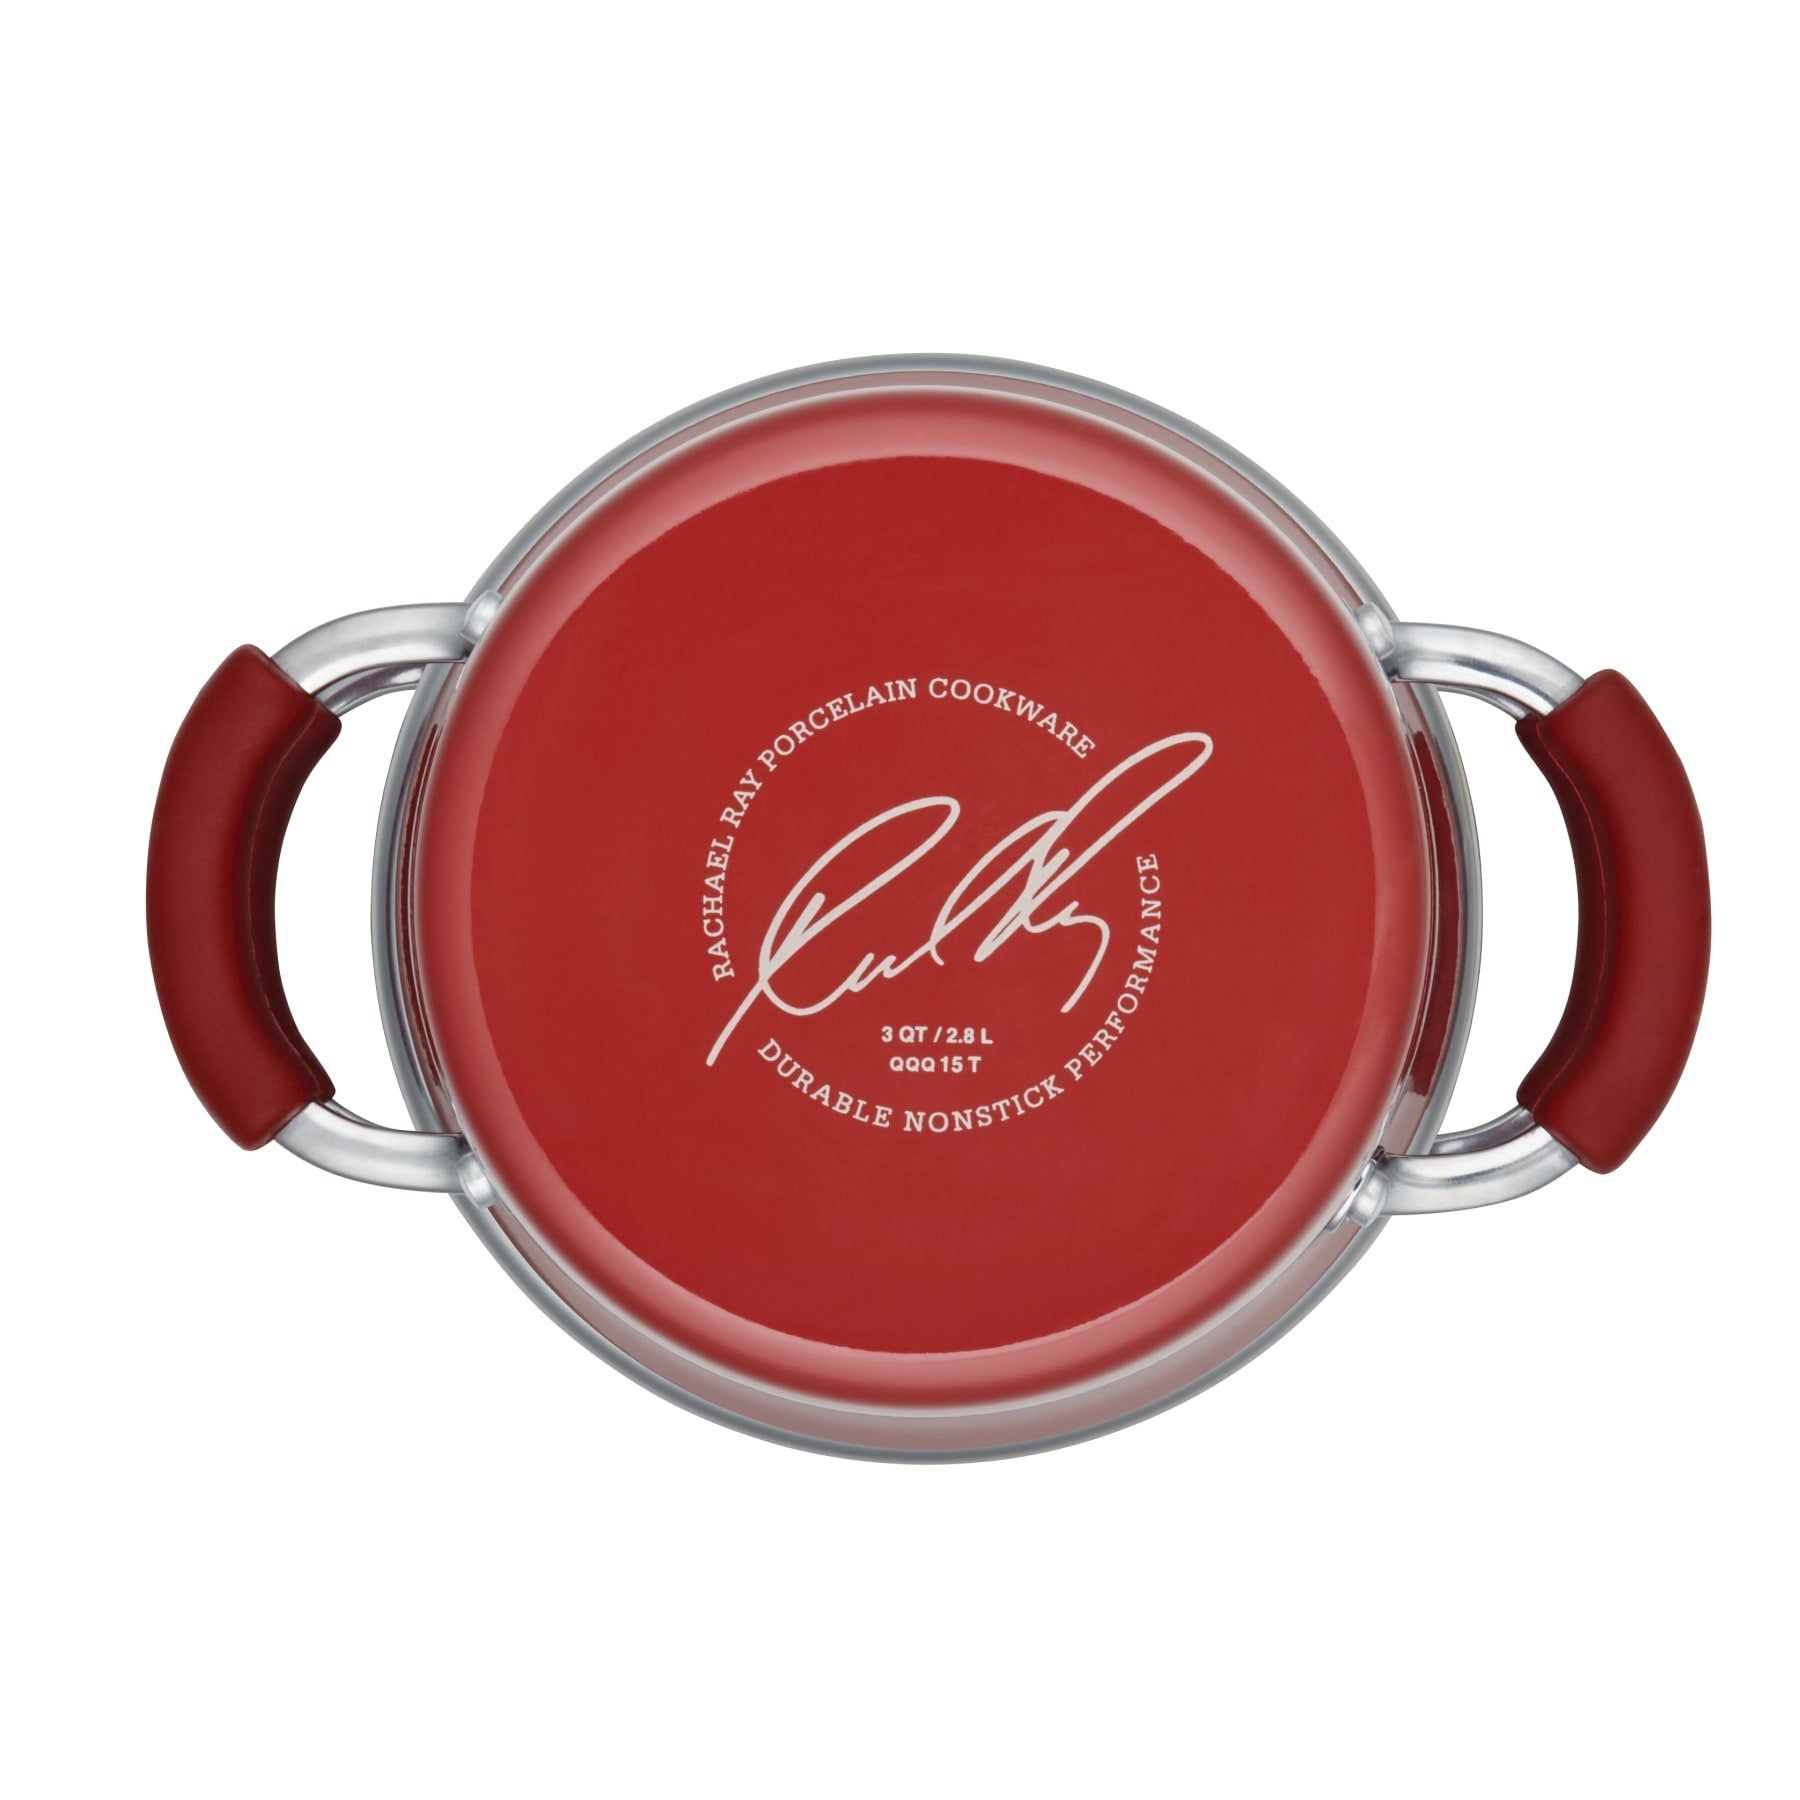 Rachael Ray Hard Enamel Nonstick 3-Quart Covered Steamer Set Red Gradient 14484